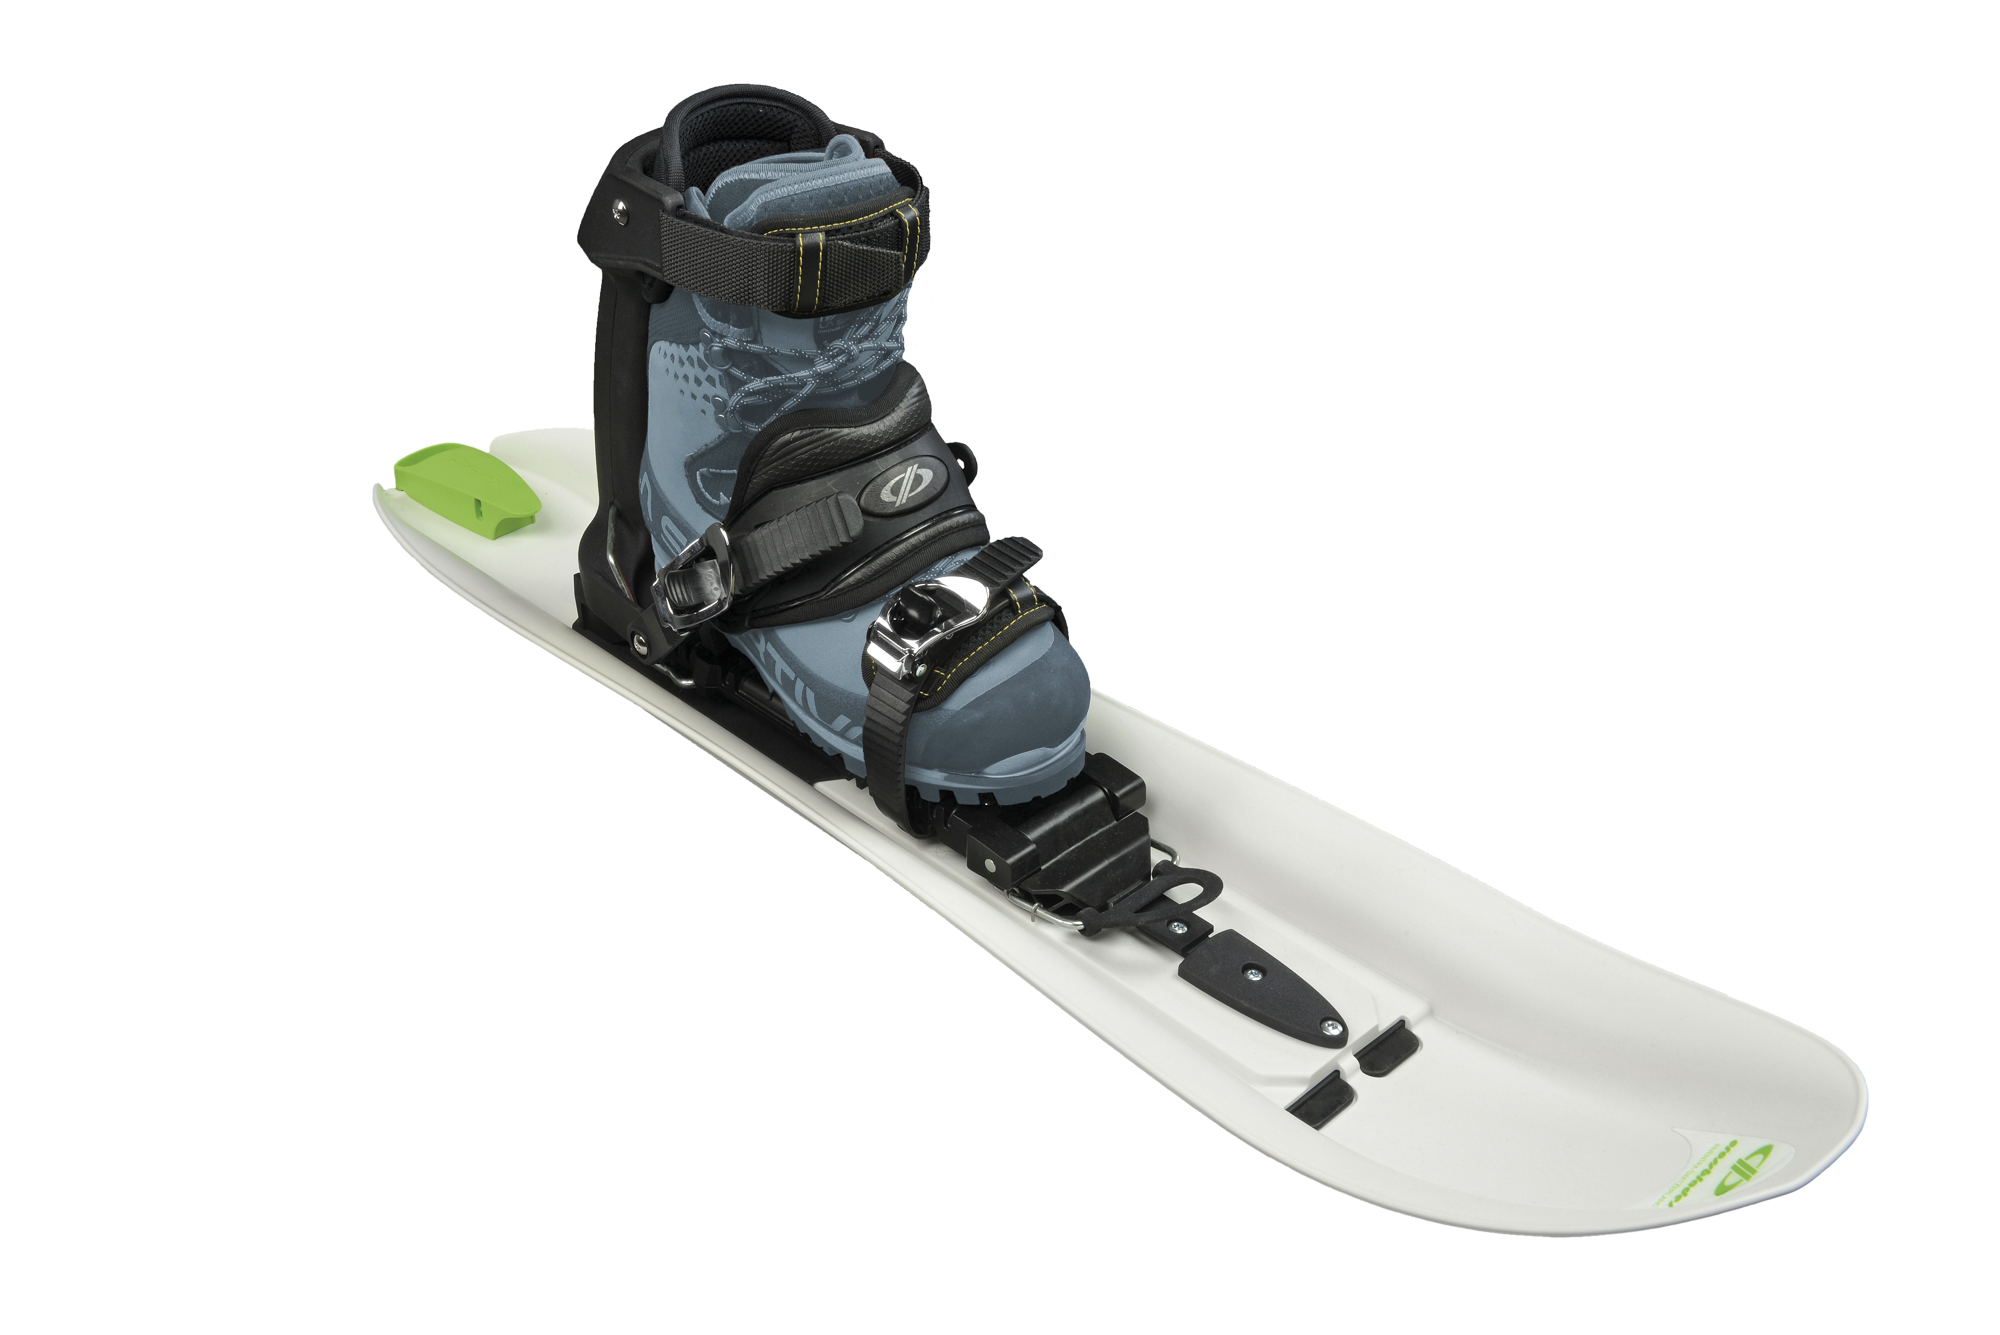 Crossblades Schneeschuhe, Schneeschuh Ski zum Gehen und Abfahren